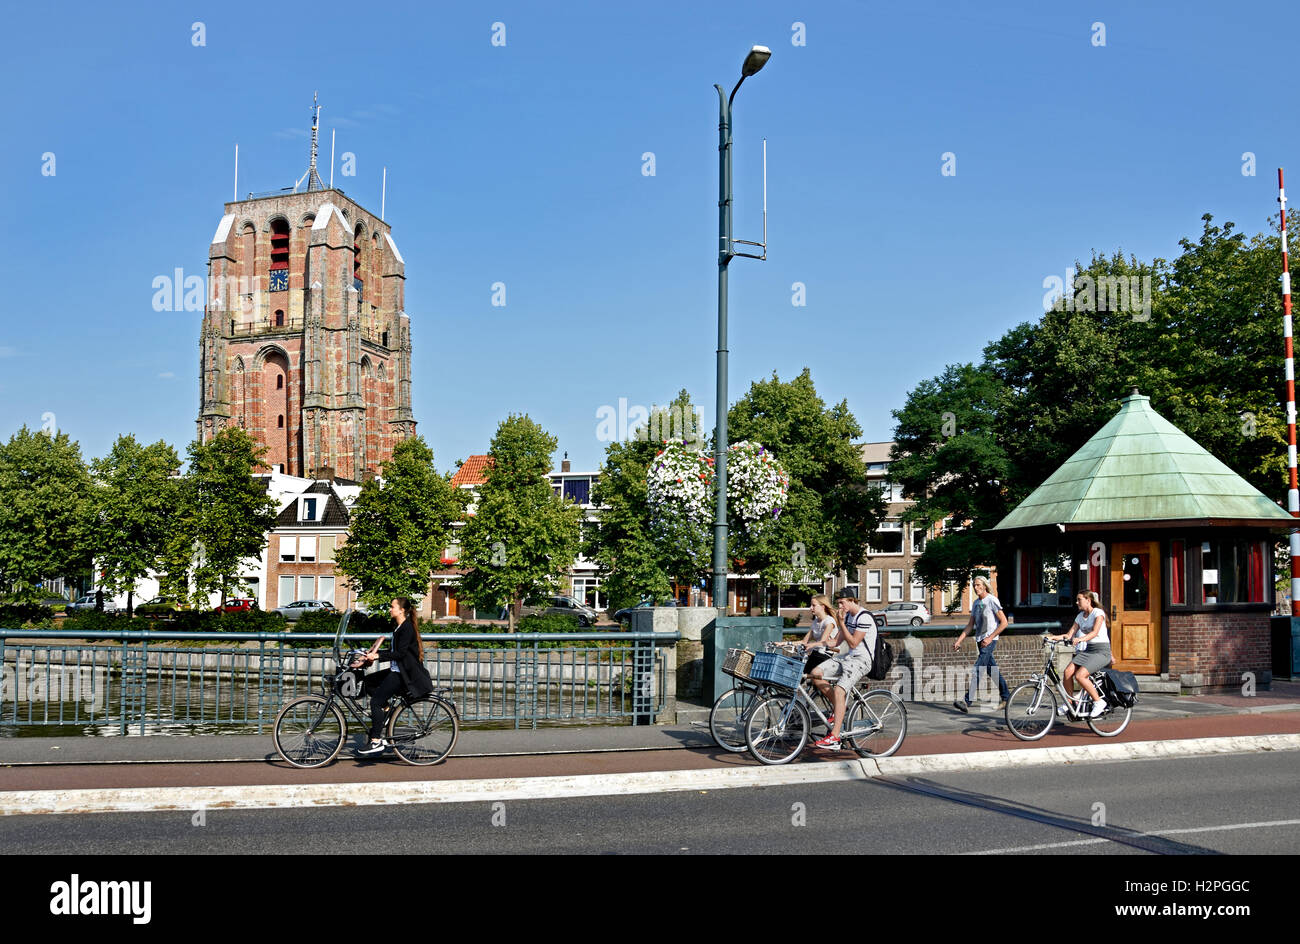 Leeuwarden vecchia città olandese Friesland Fryslan Oldehove Toren la torre per i Paesi Bassi Foto Stock